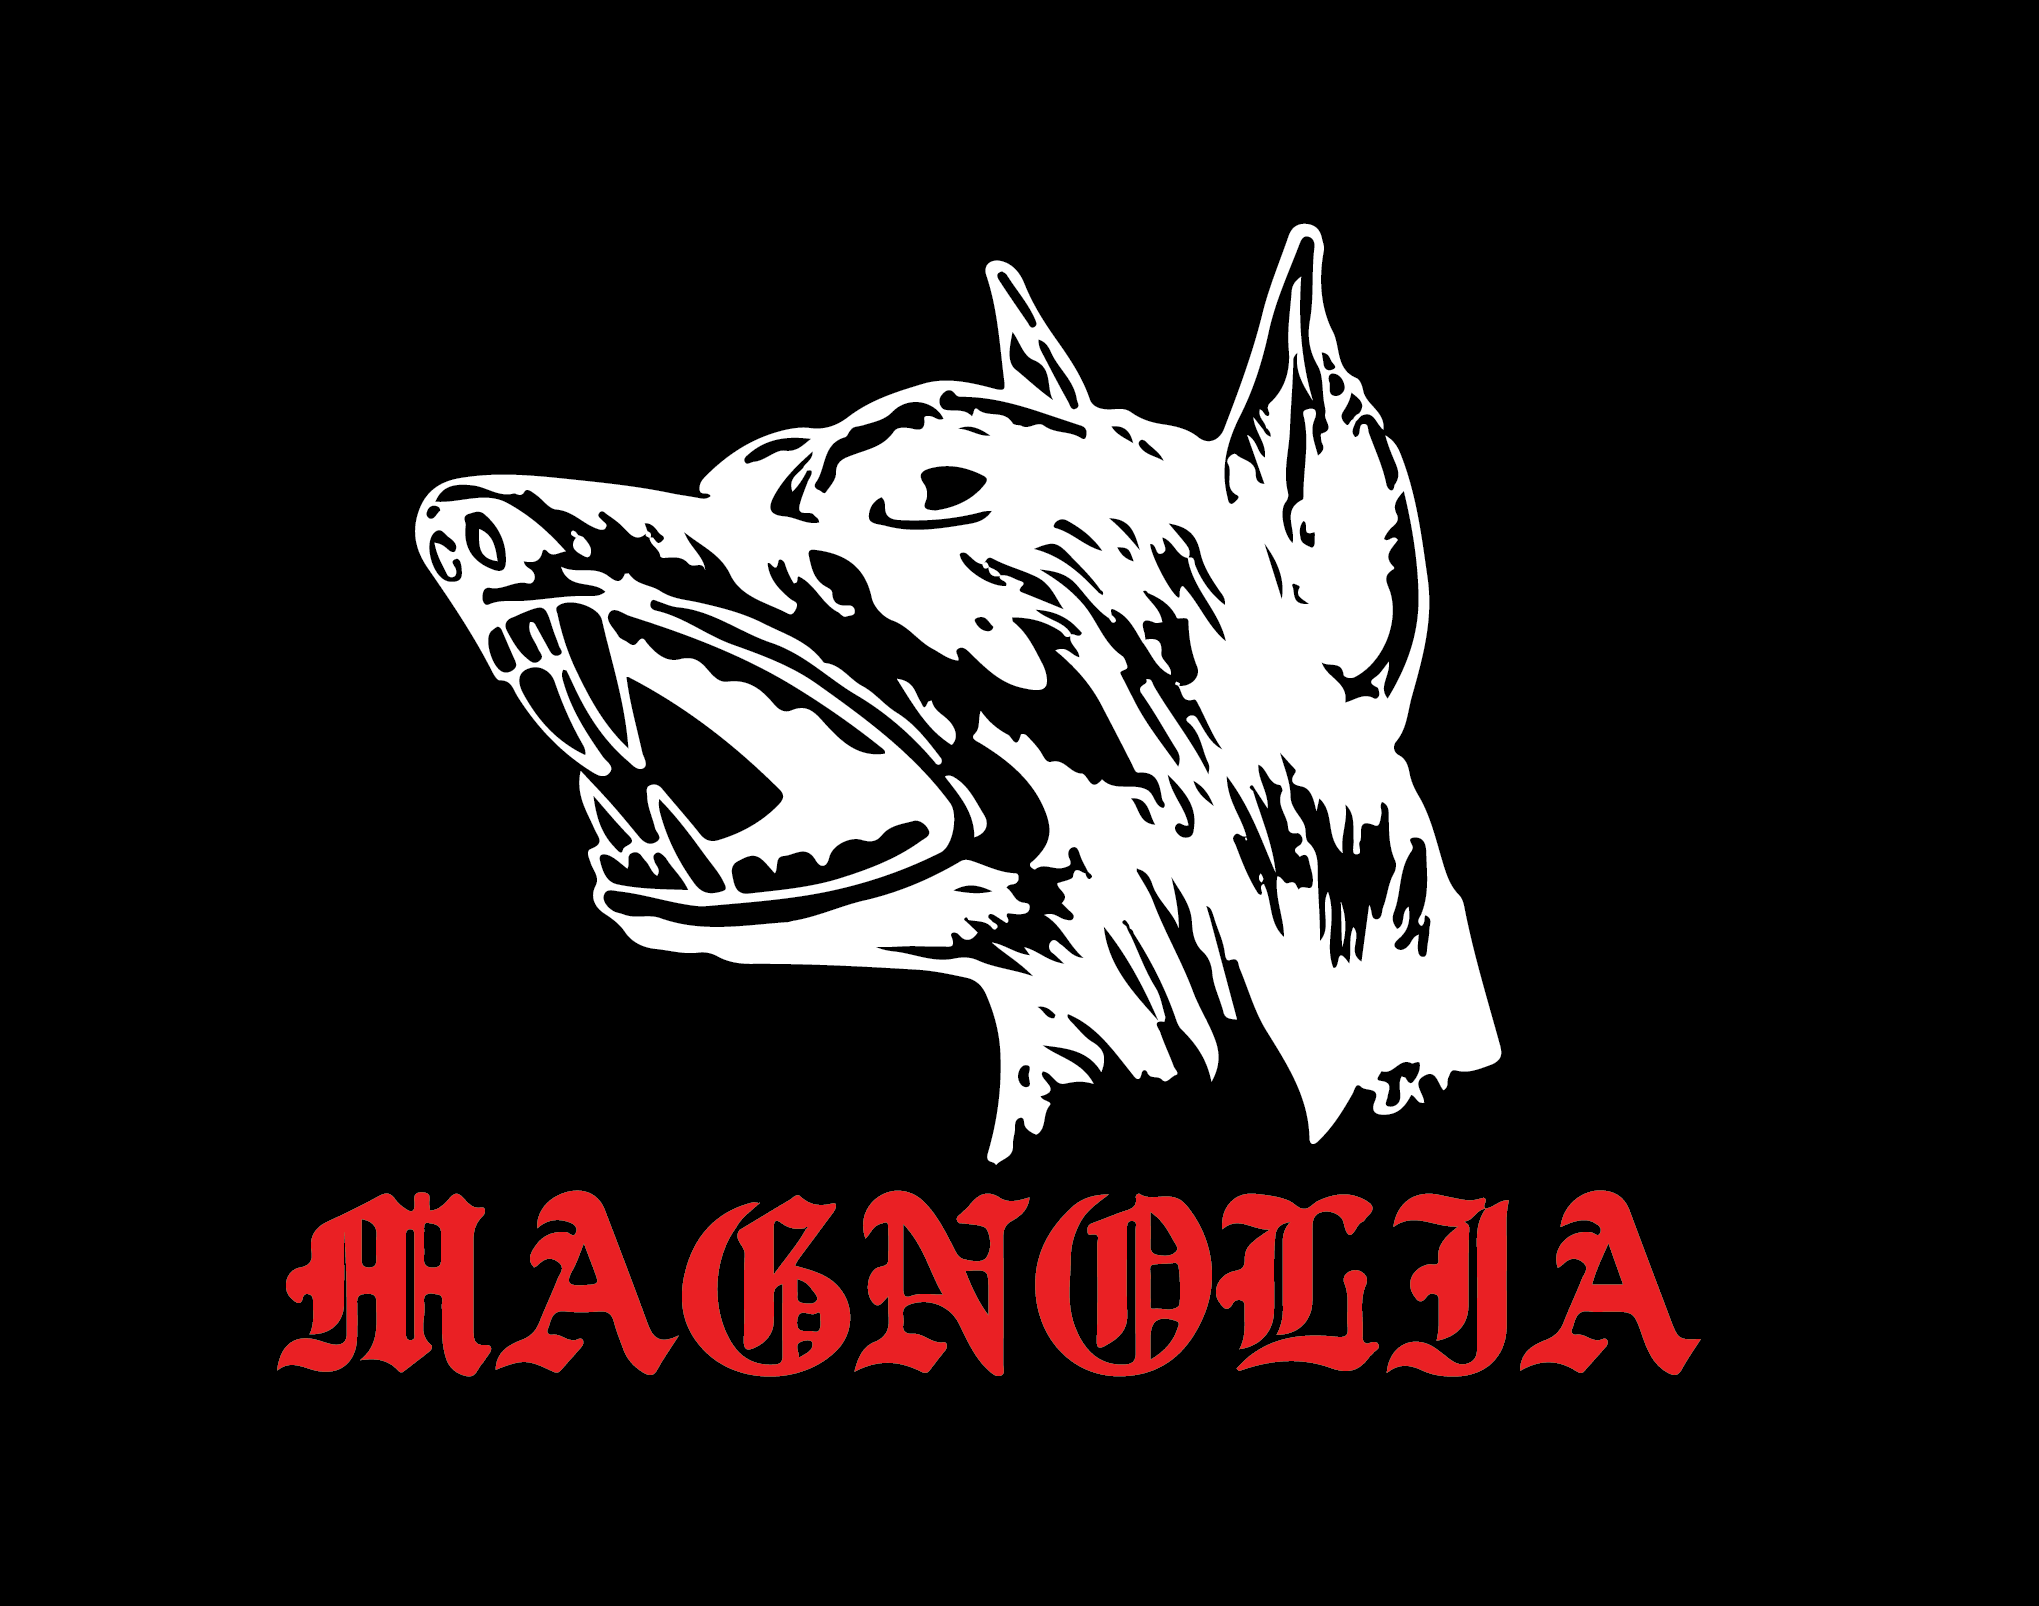 Magnolia LA